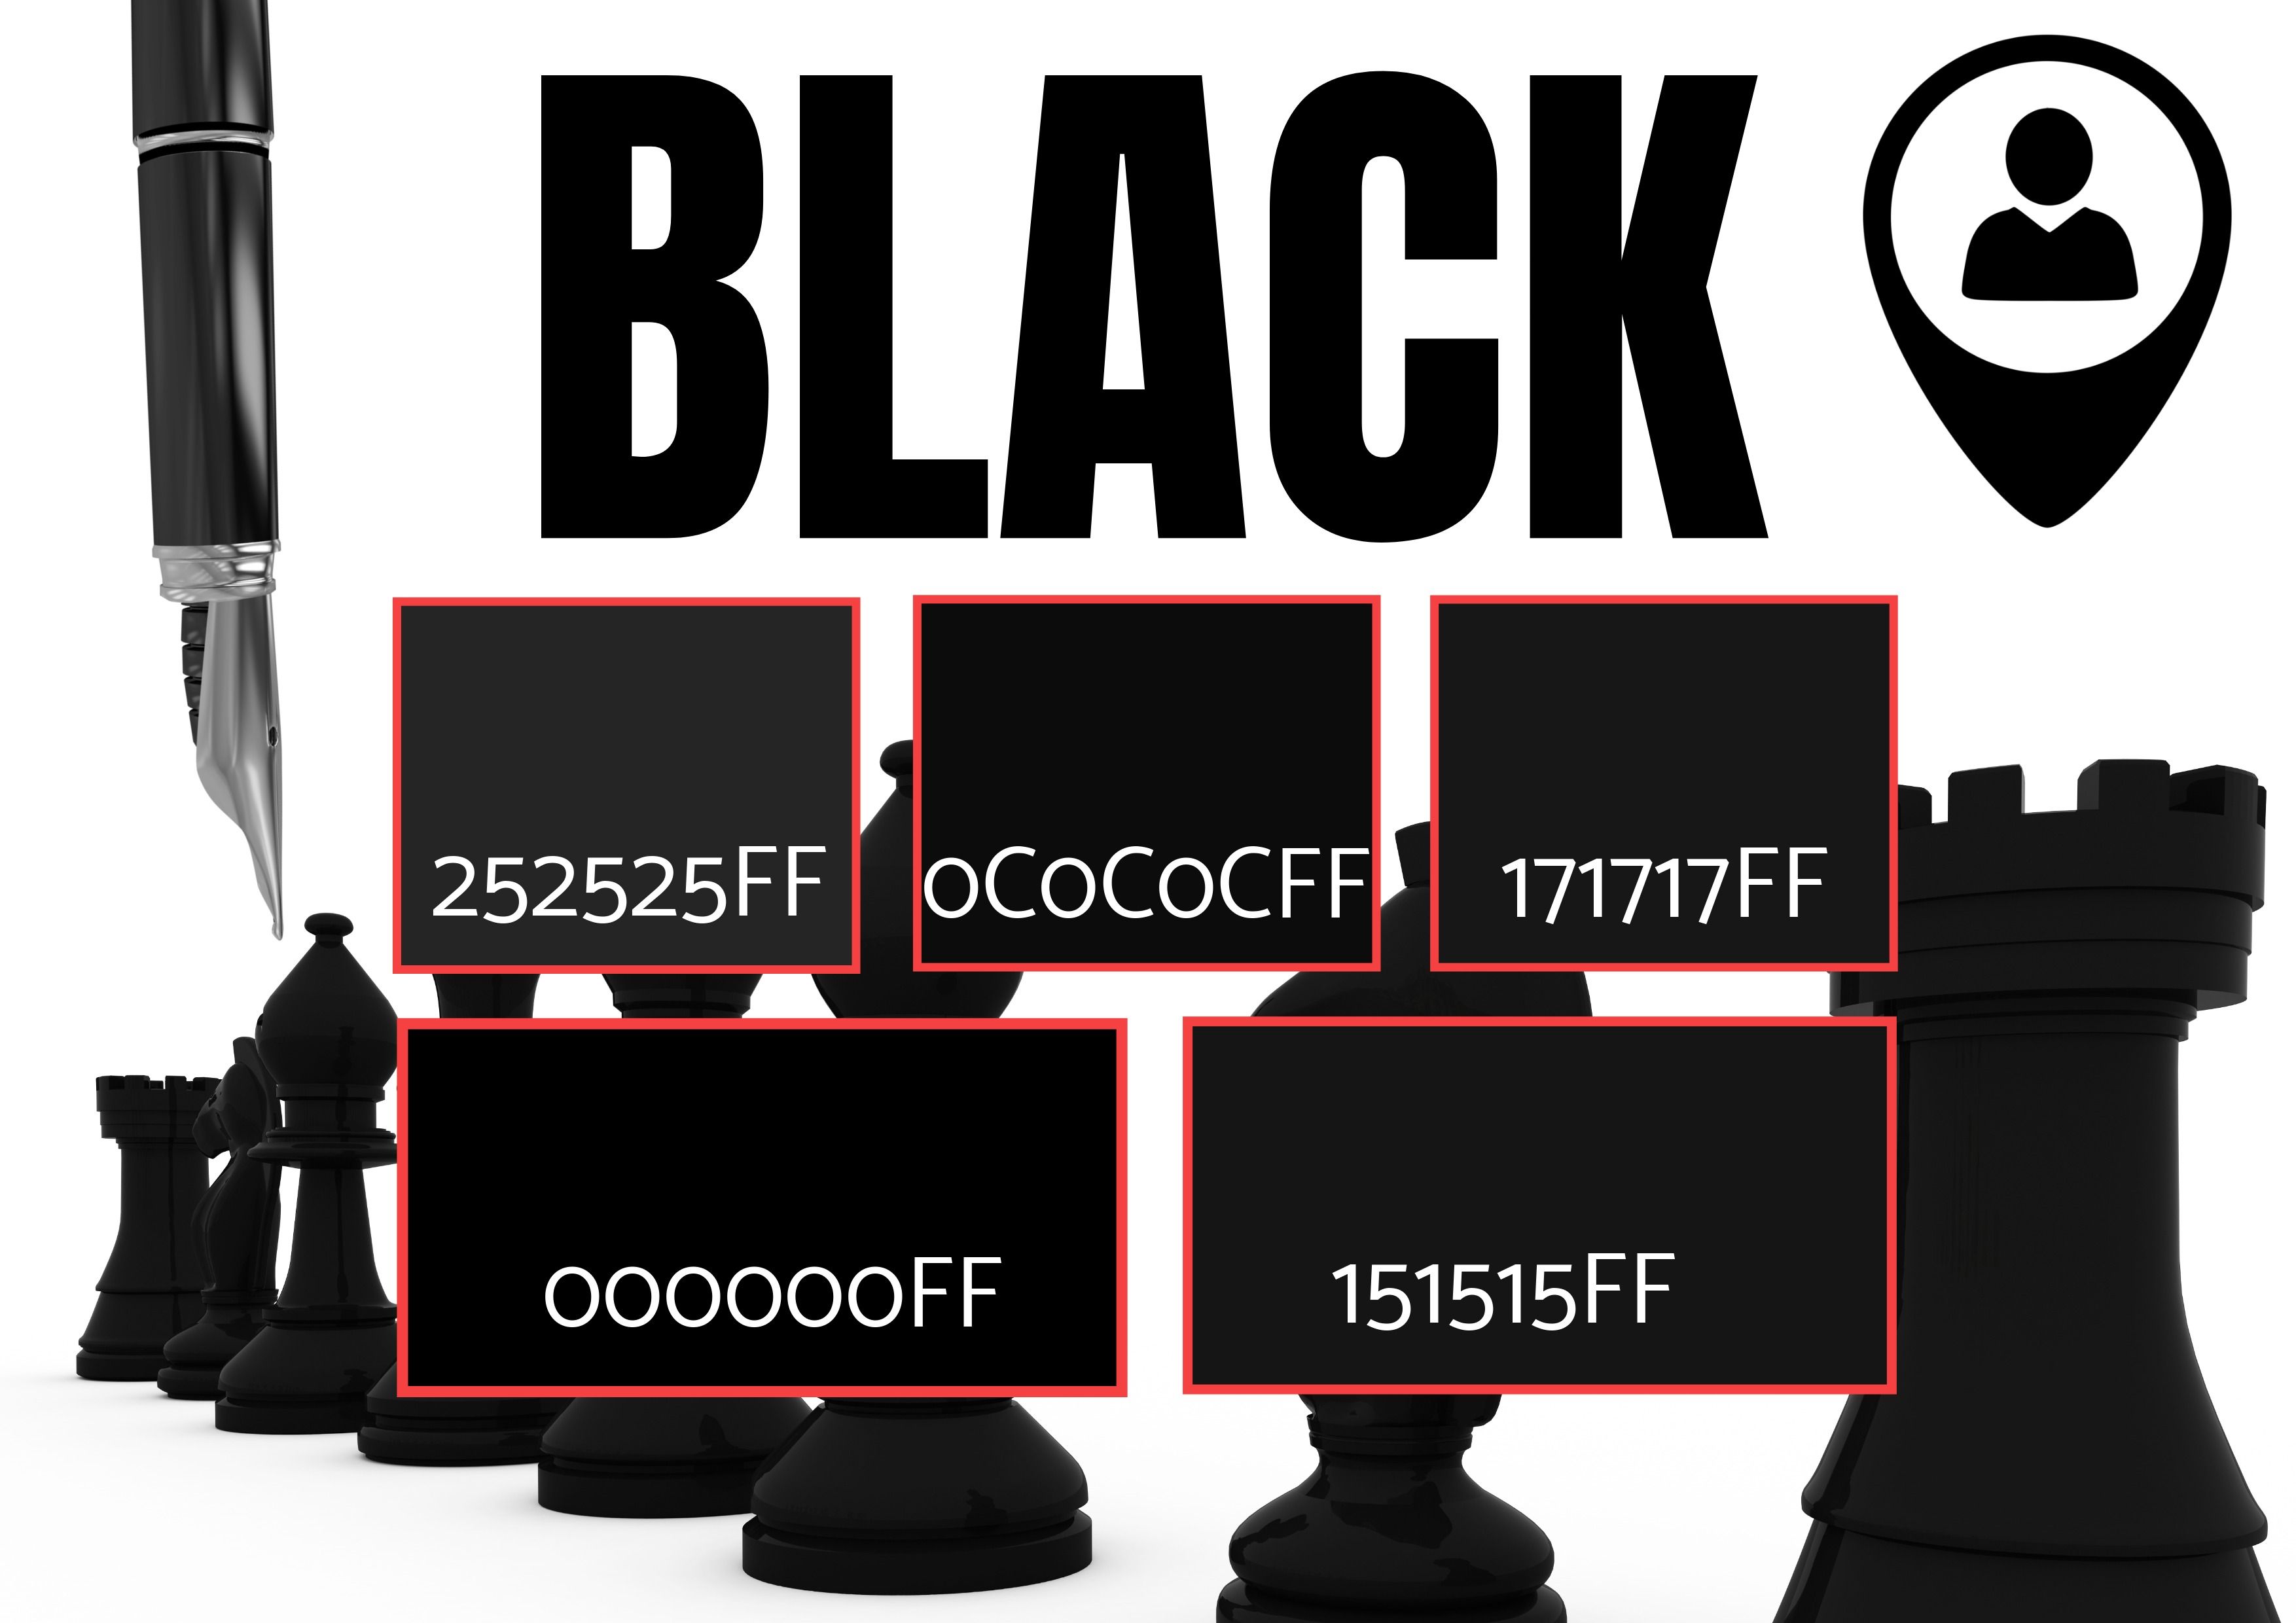 Auswahl von 5 schwarzen Farbtönen mit Bildern von Schachfiguren, Stift und einem Ortssymbol – Symbolik